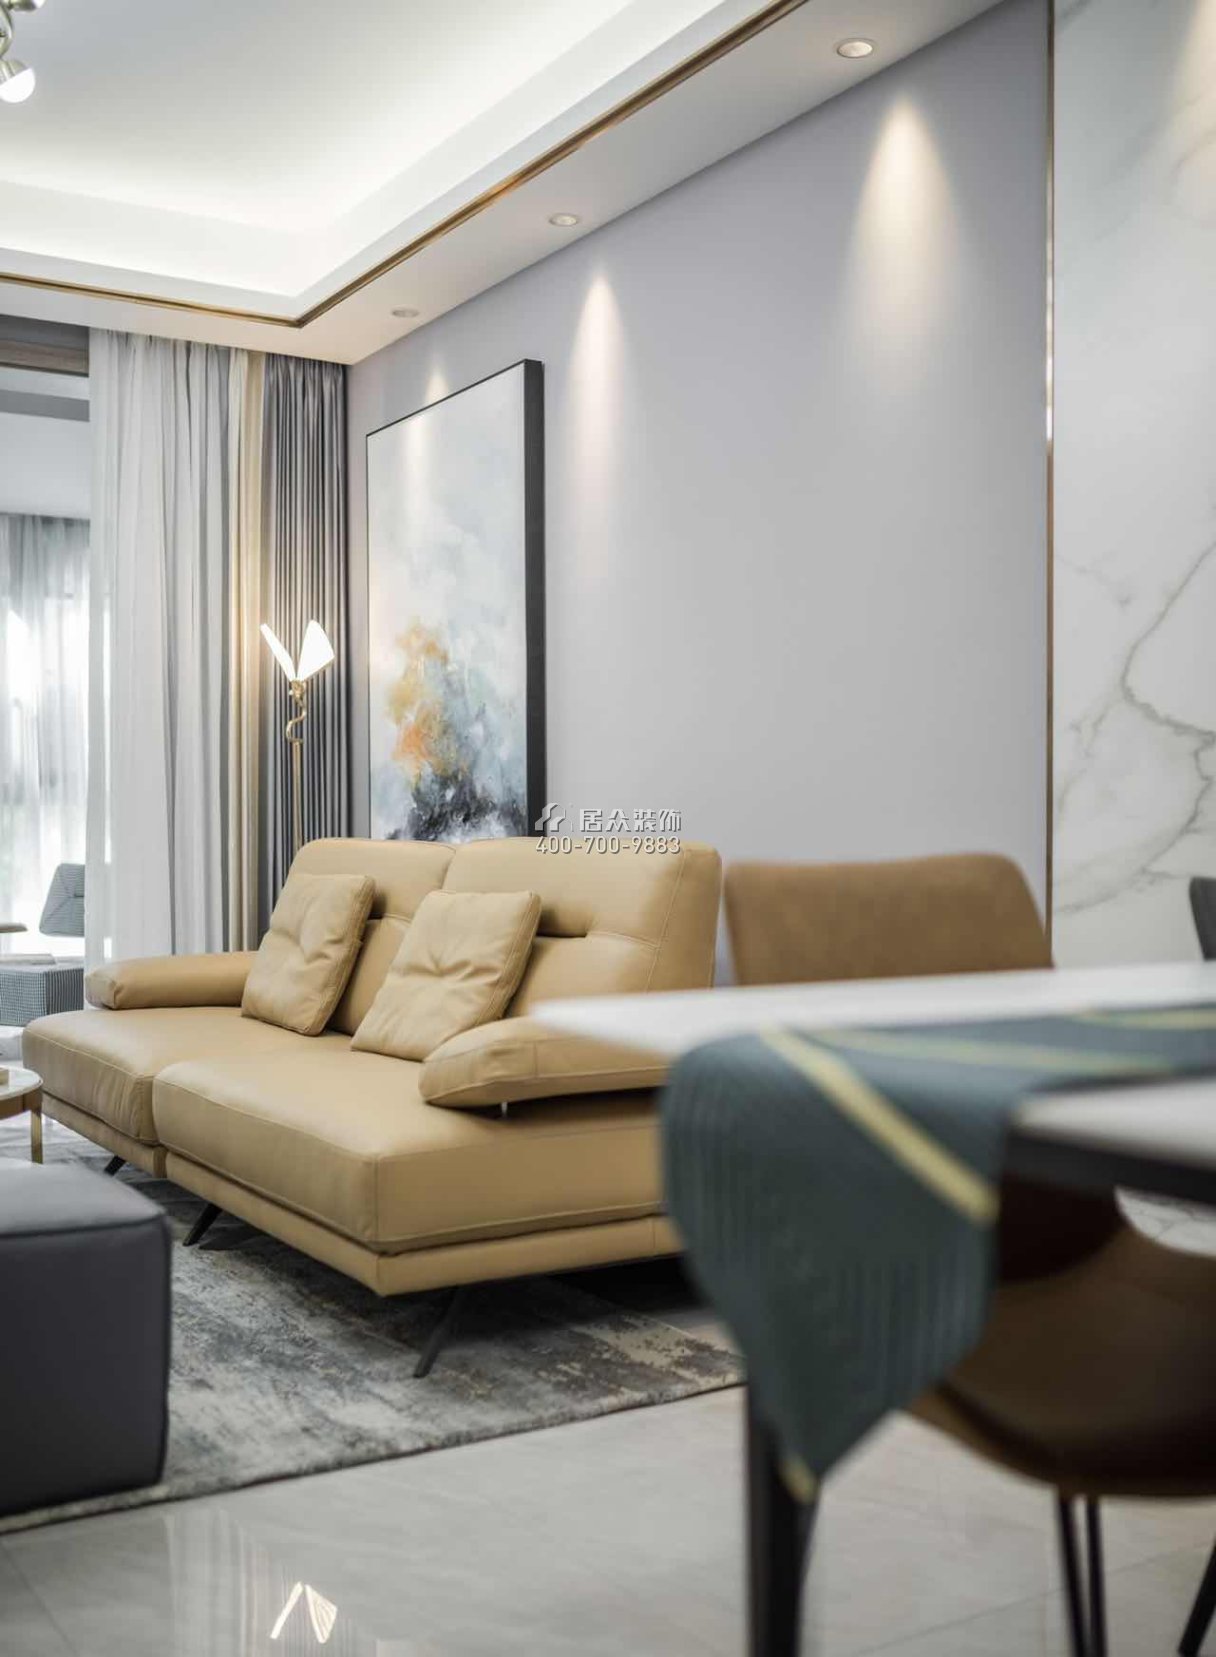 碧水龍庭130平方米現代簡約風格平層戶型客廳裝修效果圖